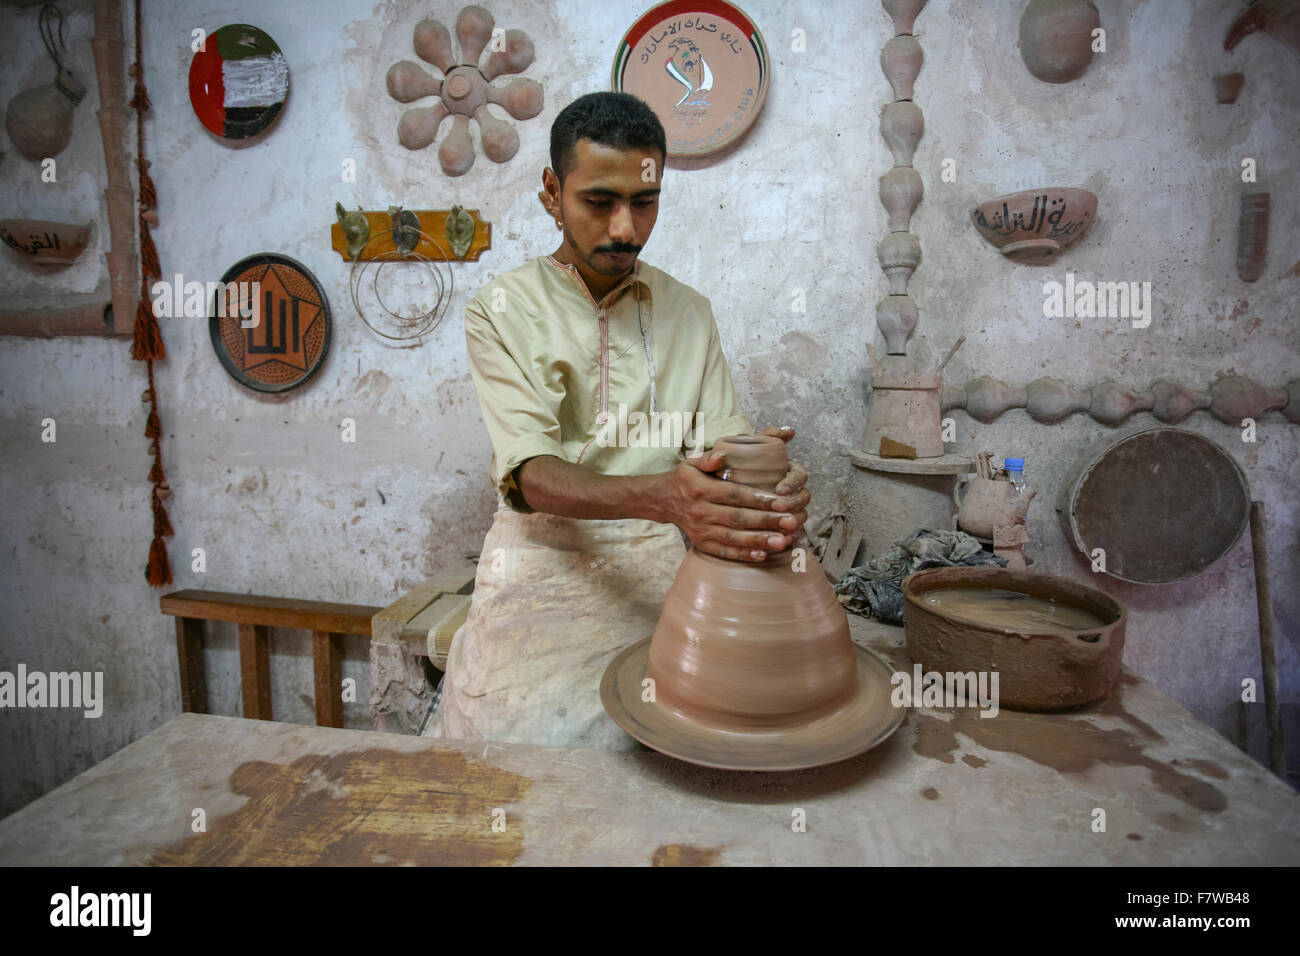 Mann Molding Clay von Hand, Emirates Heritage Village, Abu Dhabi, Vereinigte Arabische Emirate Stockfoto